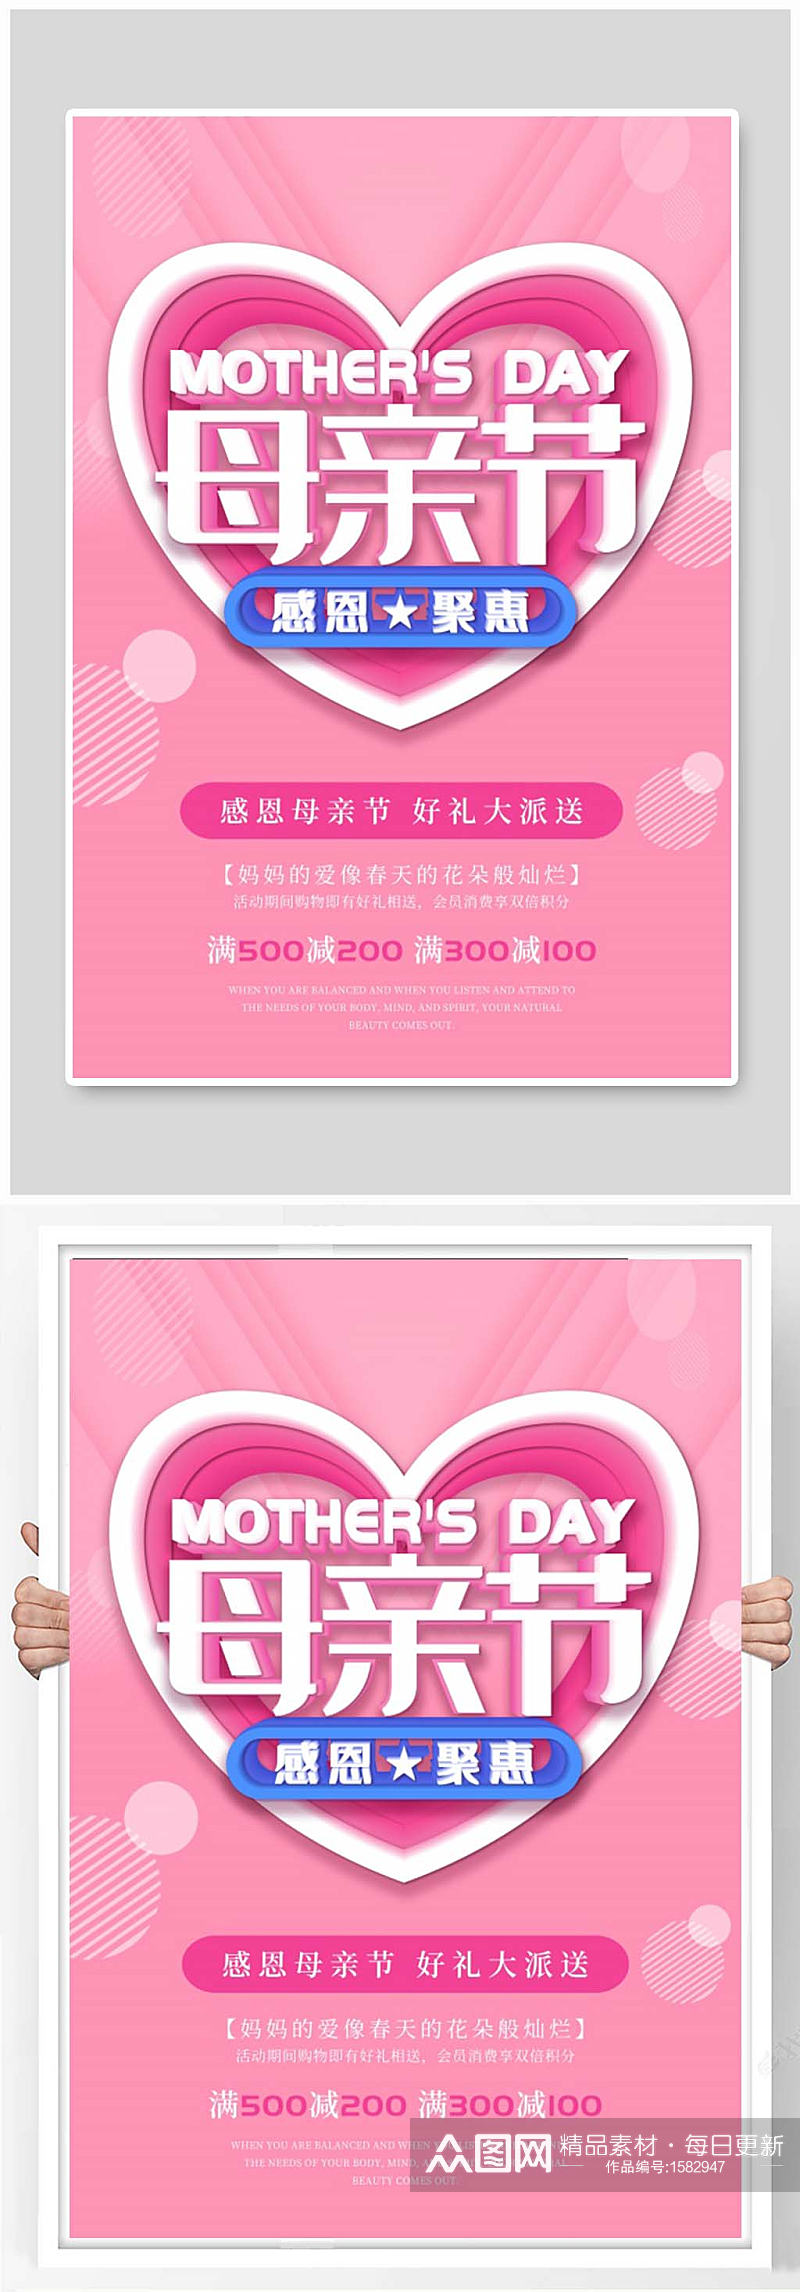 粉色时尚唯美母亲节展示海报设计素材